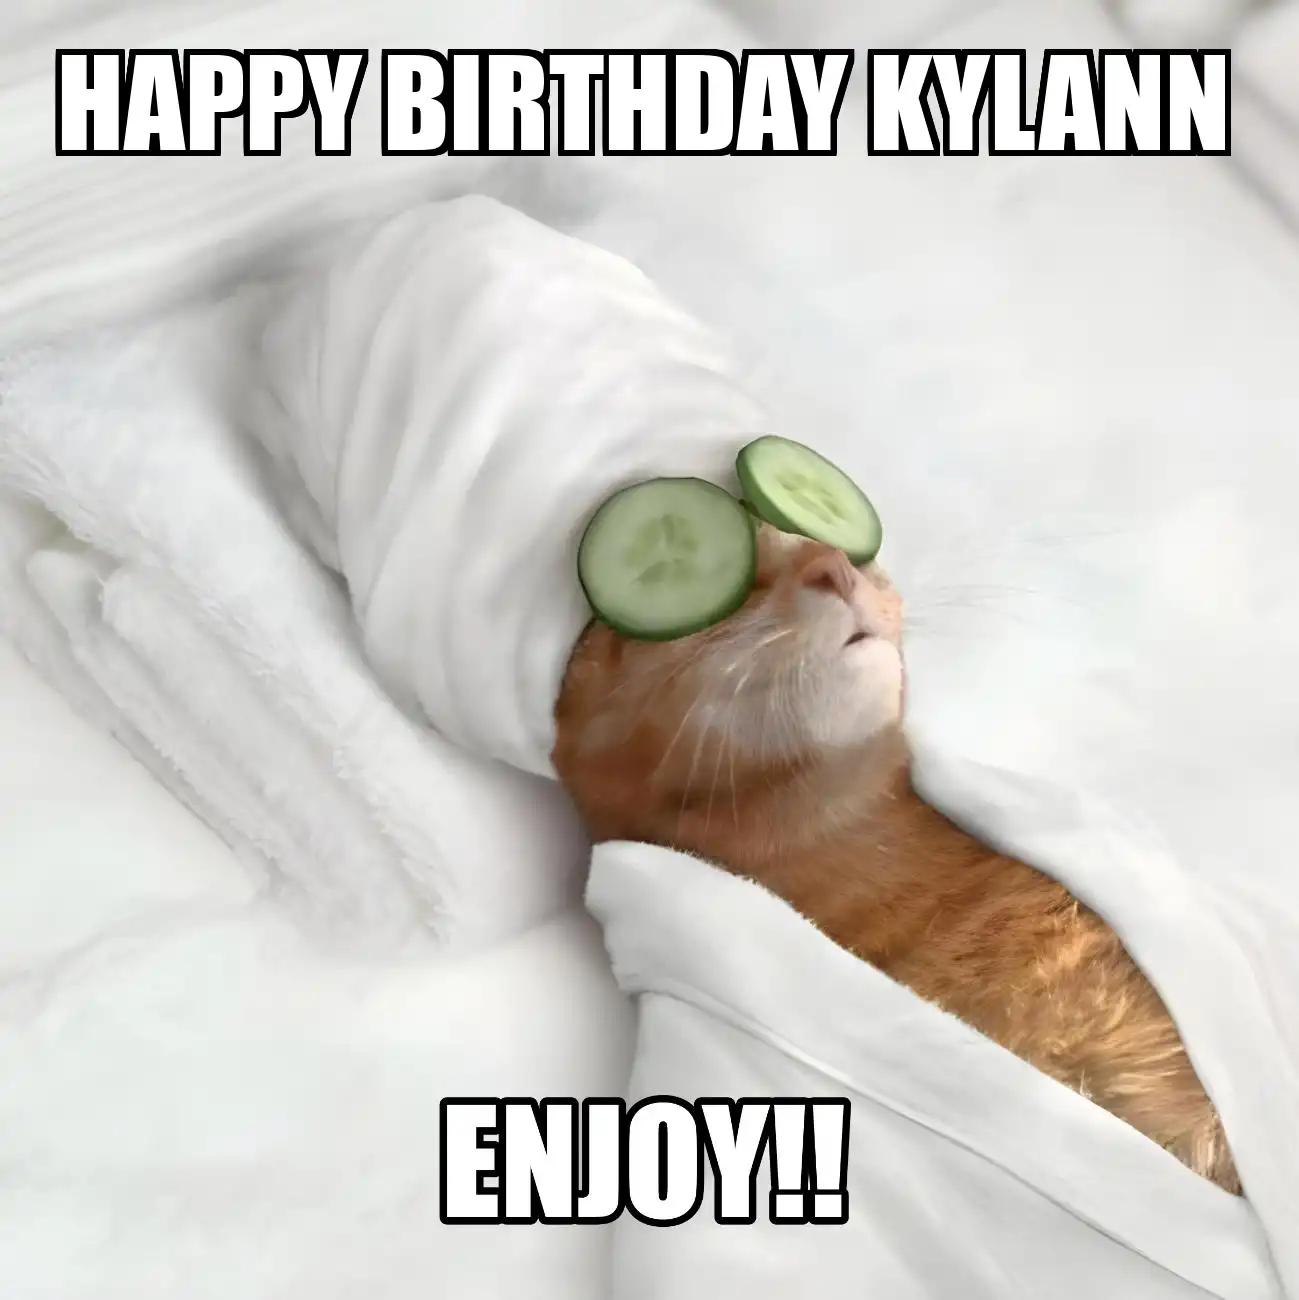 Happy Birthday Kylann Enjoy Cat Meme